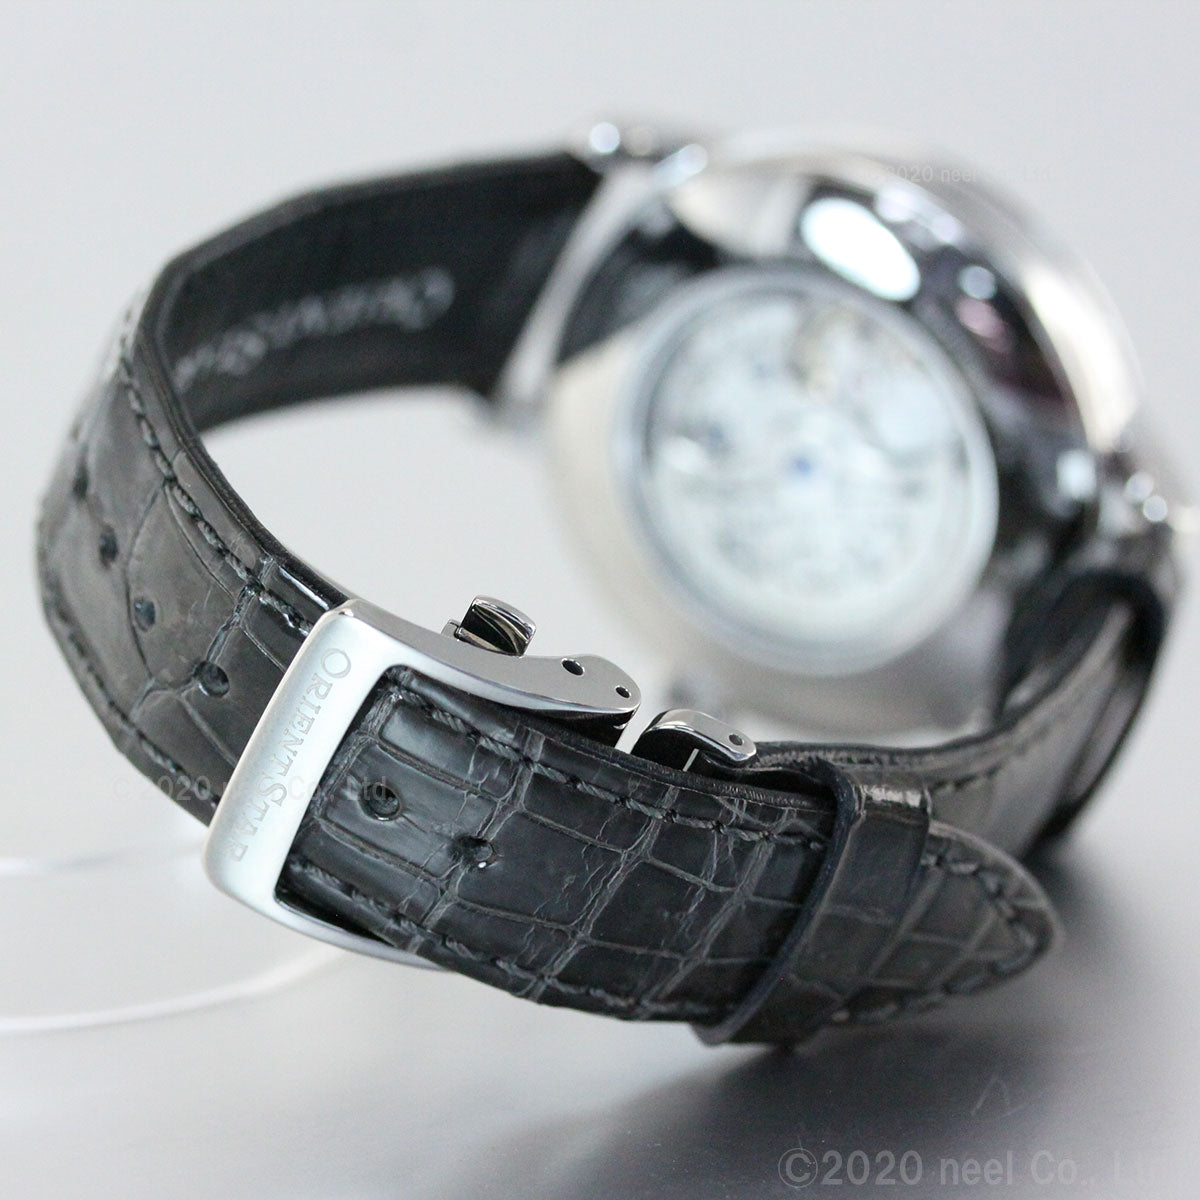 オリエントスター ORIENT STAR 腕時計 メンズ 自動巻き 機械式 クラシック CLASSIC メカニカルムーンフェイズ RK-AY0104N